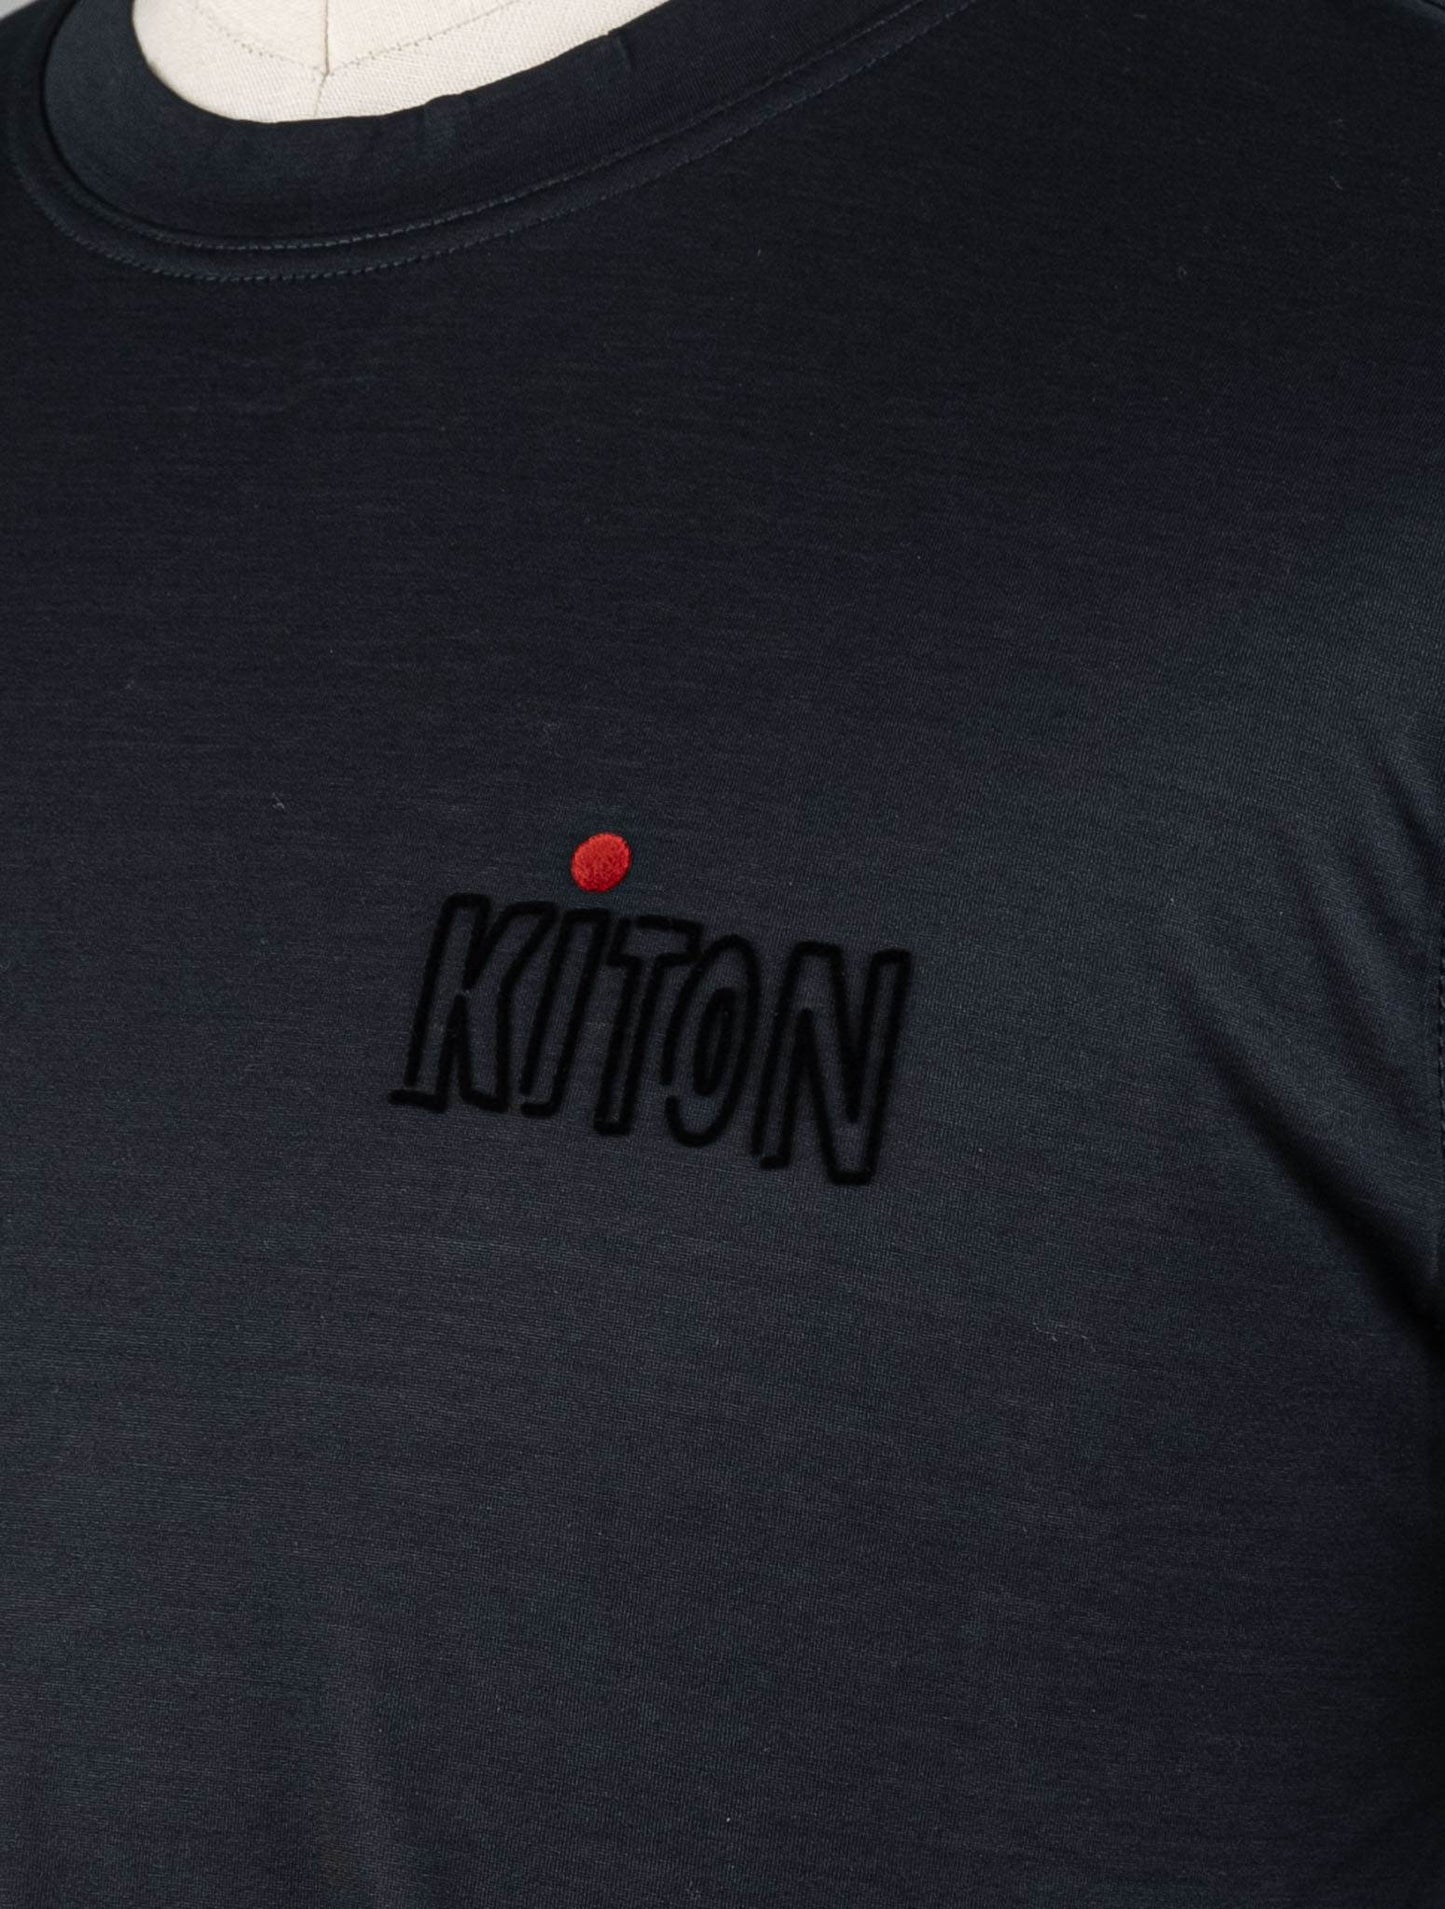 Kiton Black Cotton T-Shirt